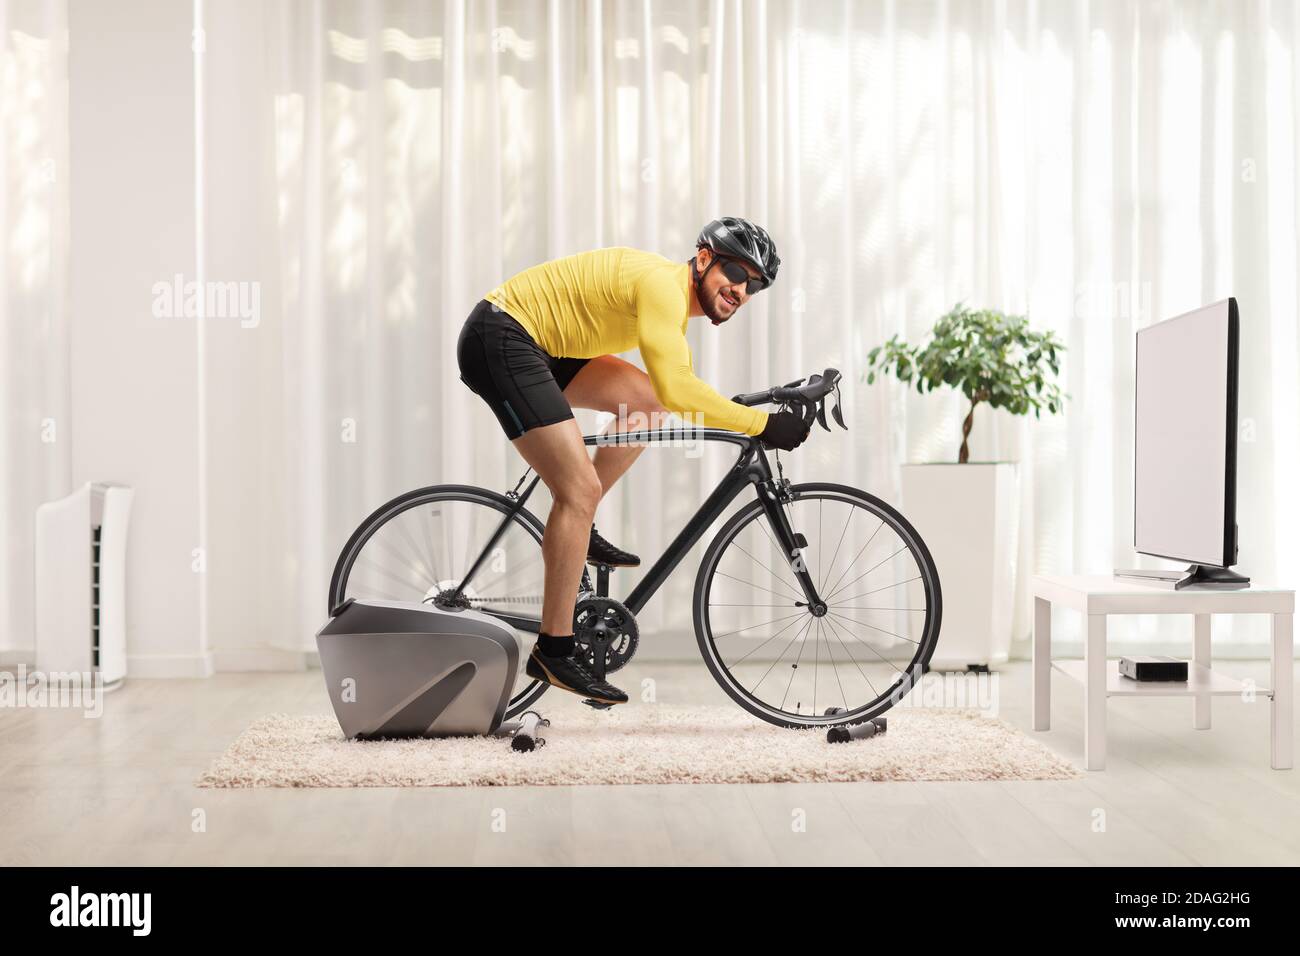 Ganzkörperaufnahme eines jungen Mannes, der mit einem Fahrrad Trainer Fahrrad zu Hause und Blick auf die Kamera Stockfoto